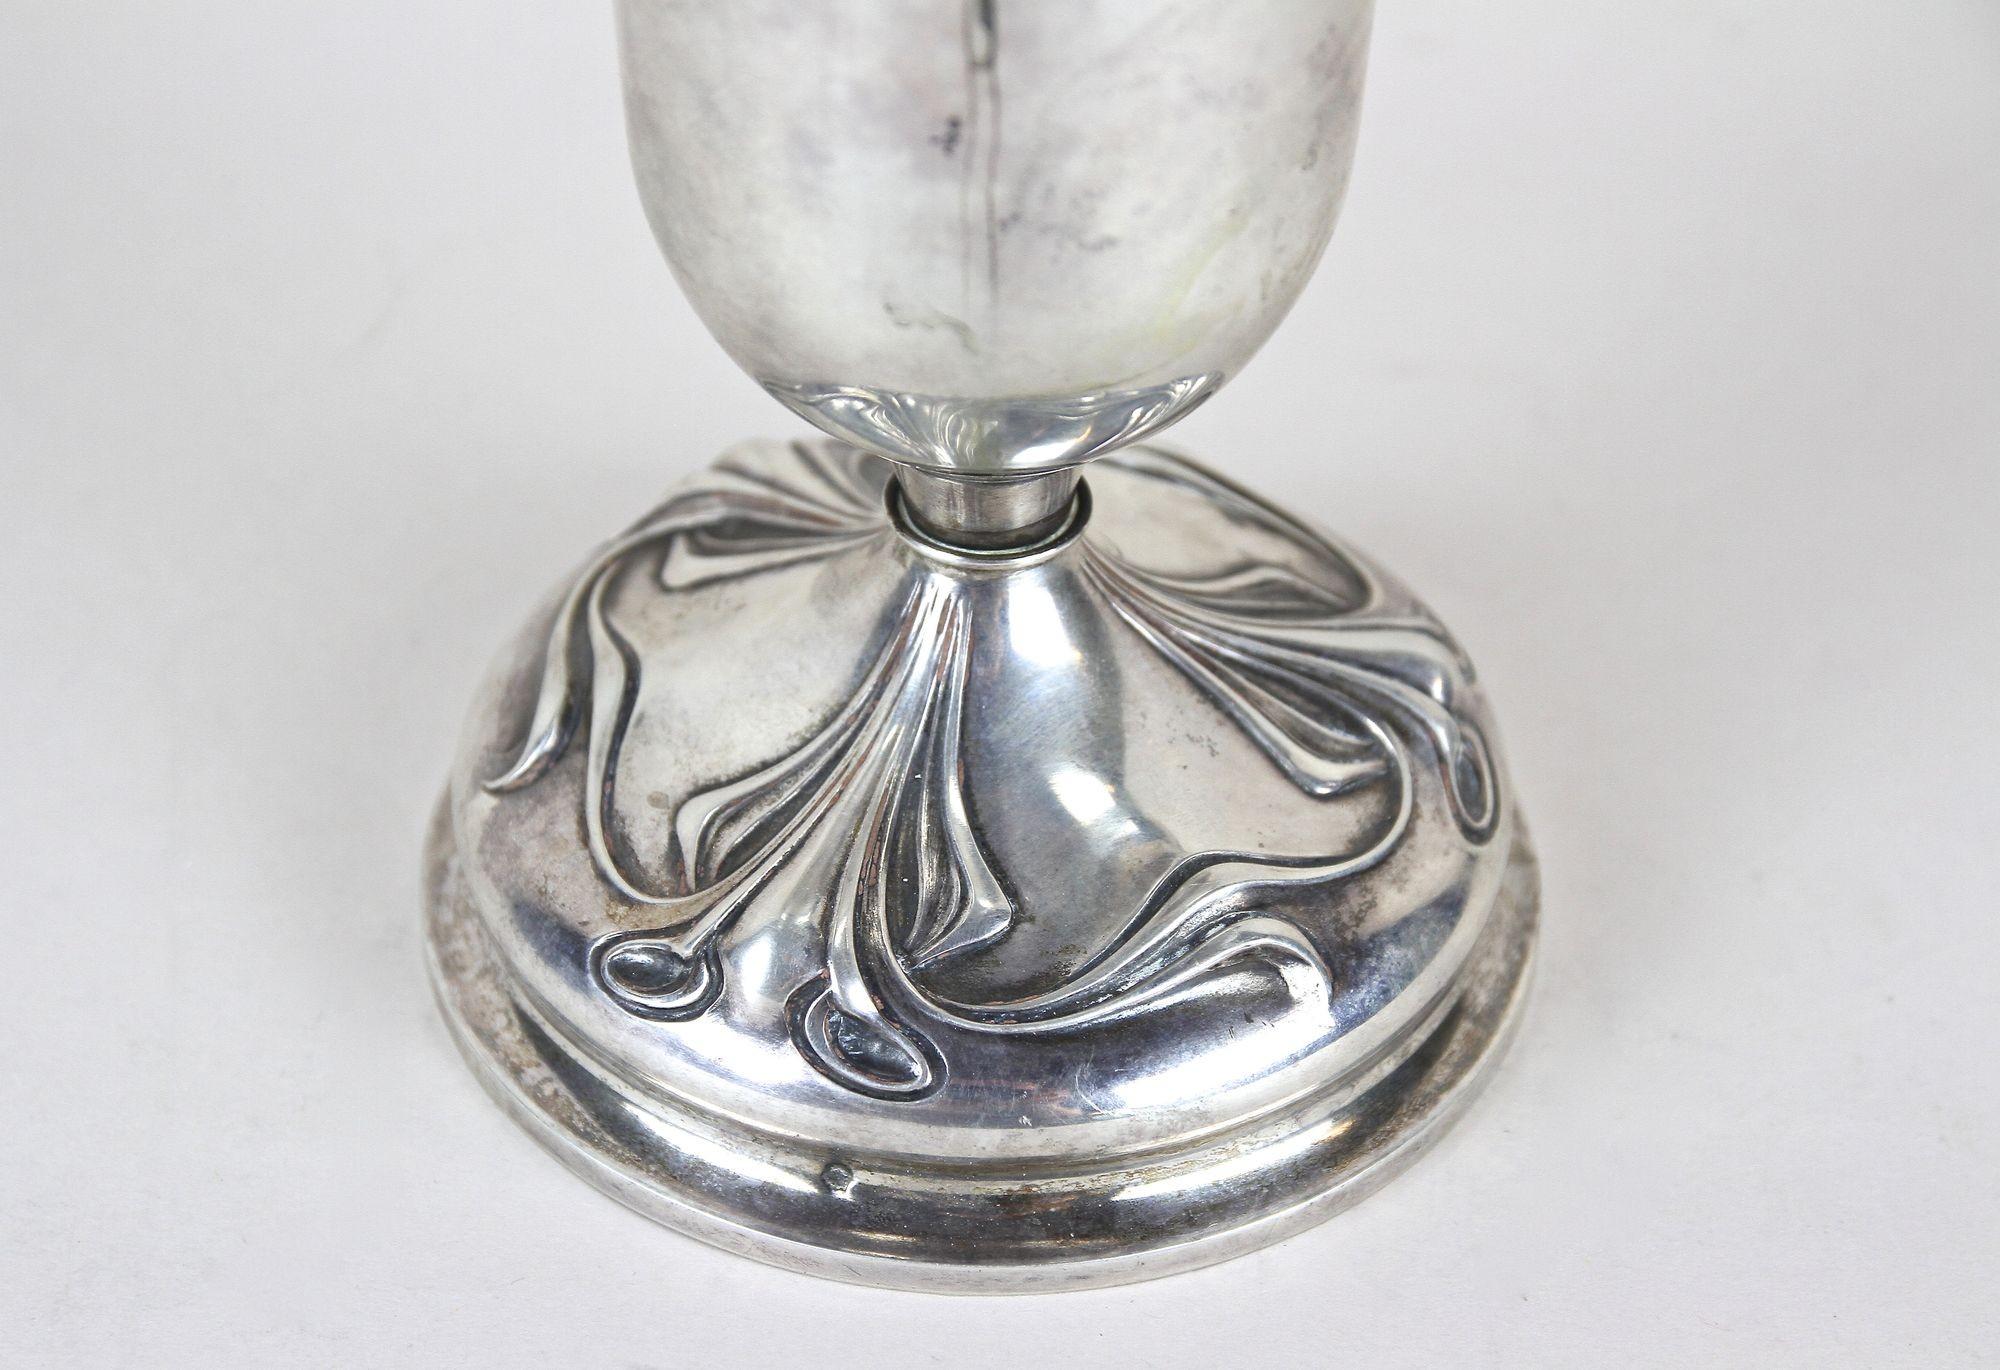 20th Century Art Nouveau Silver Amphora Vase With Lid, Austria circa 1900 For Sale 4